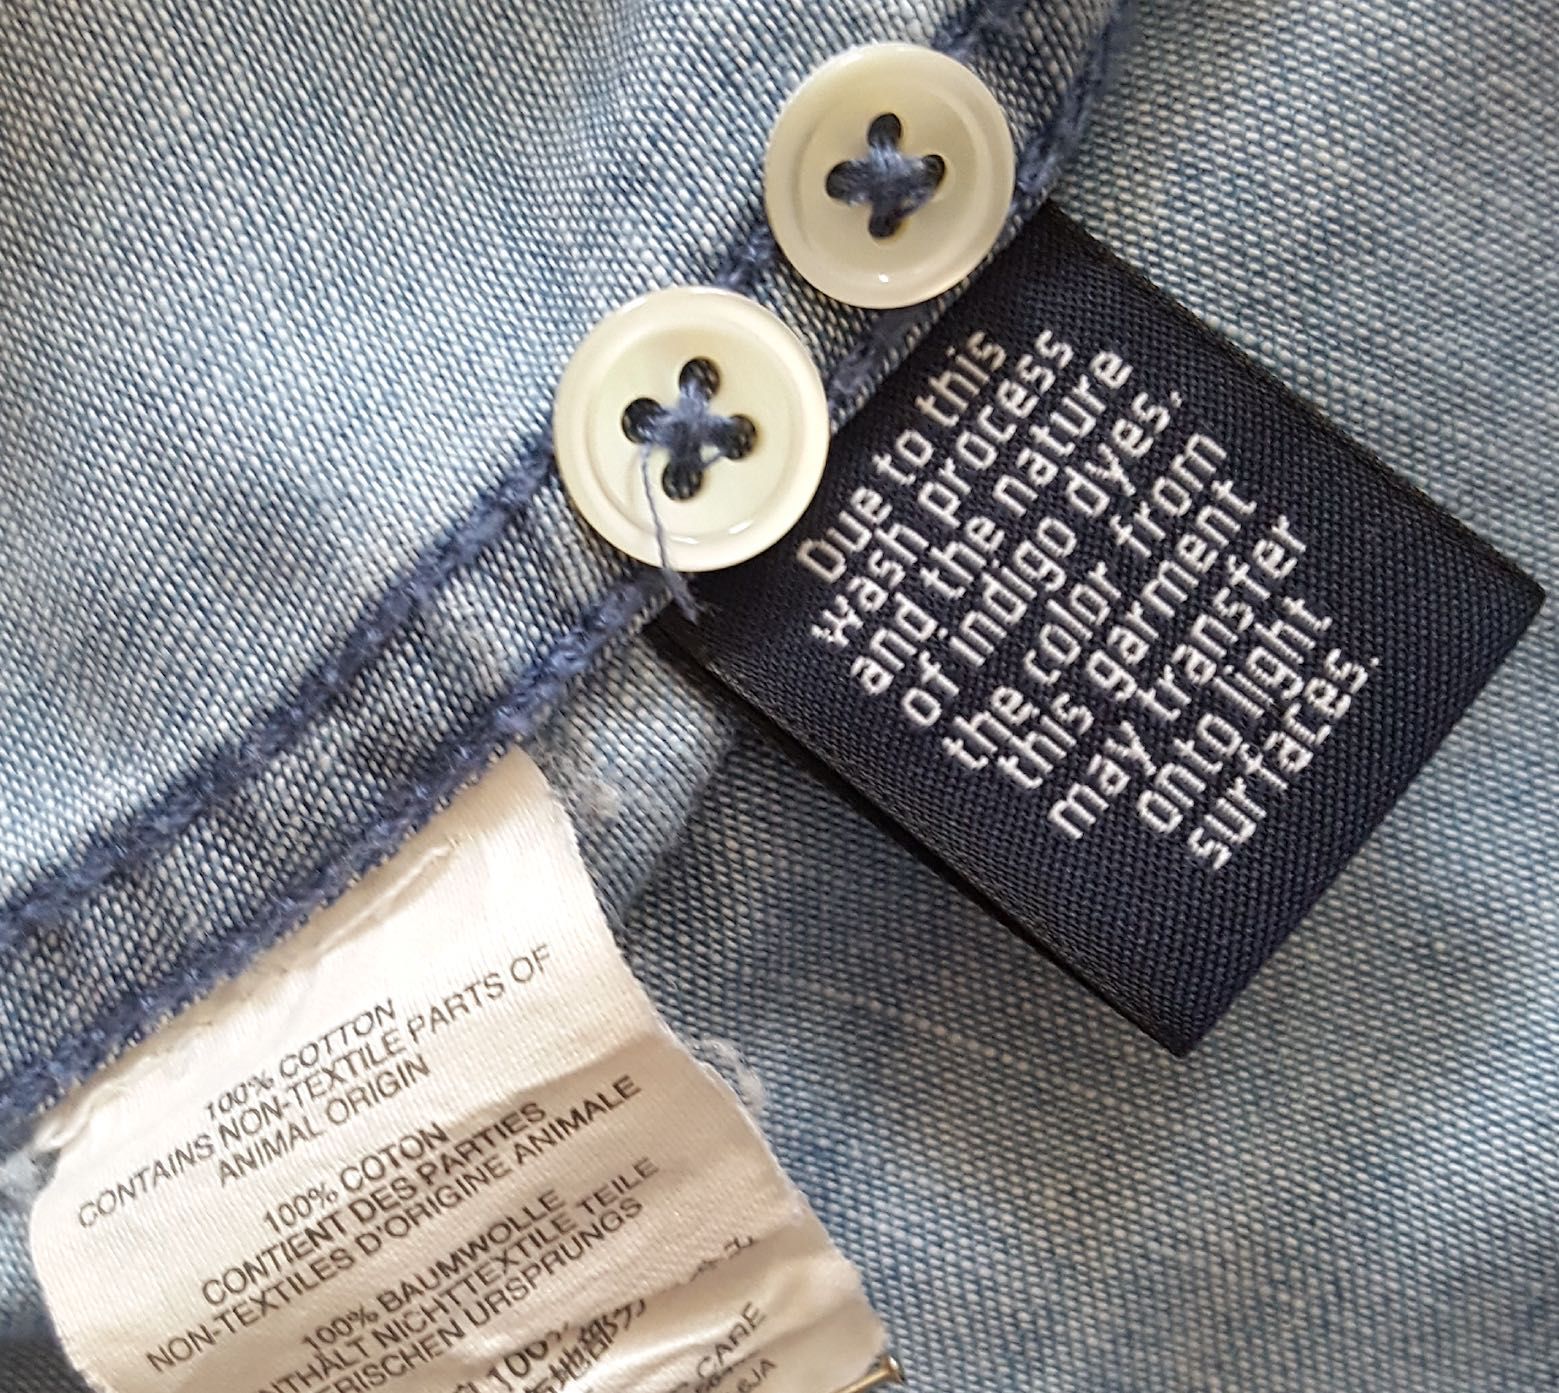 J.CREW__Damska koszula jeansowa w roz.2   /   PL 36